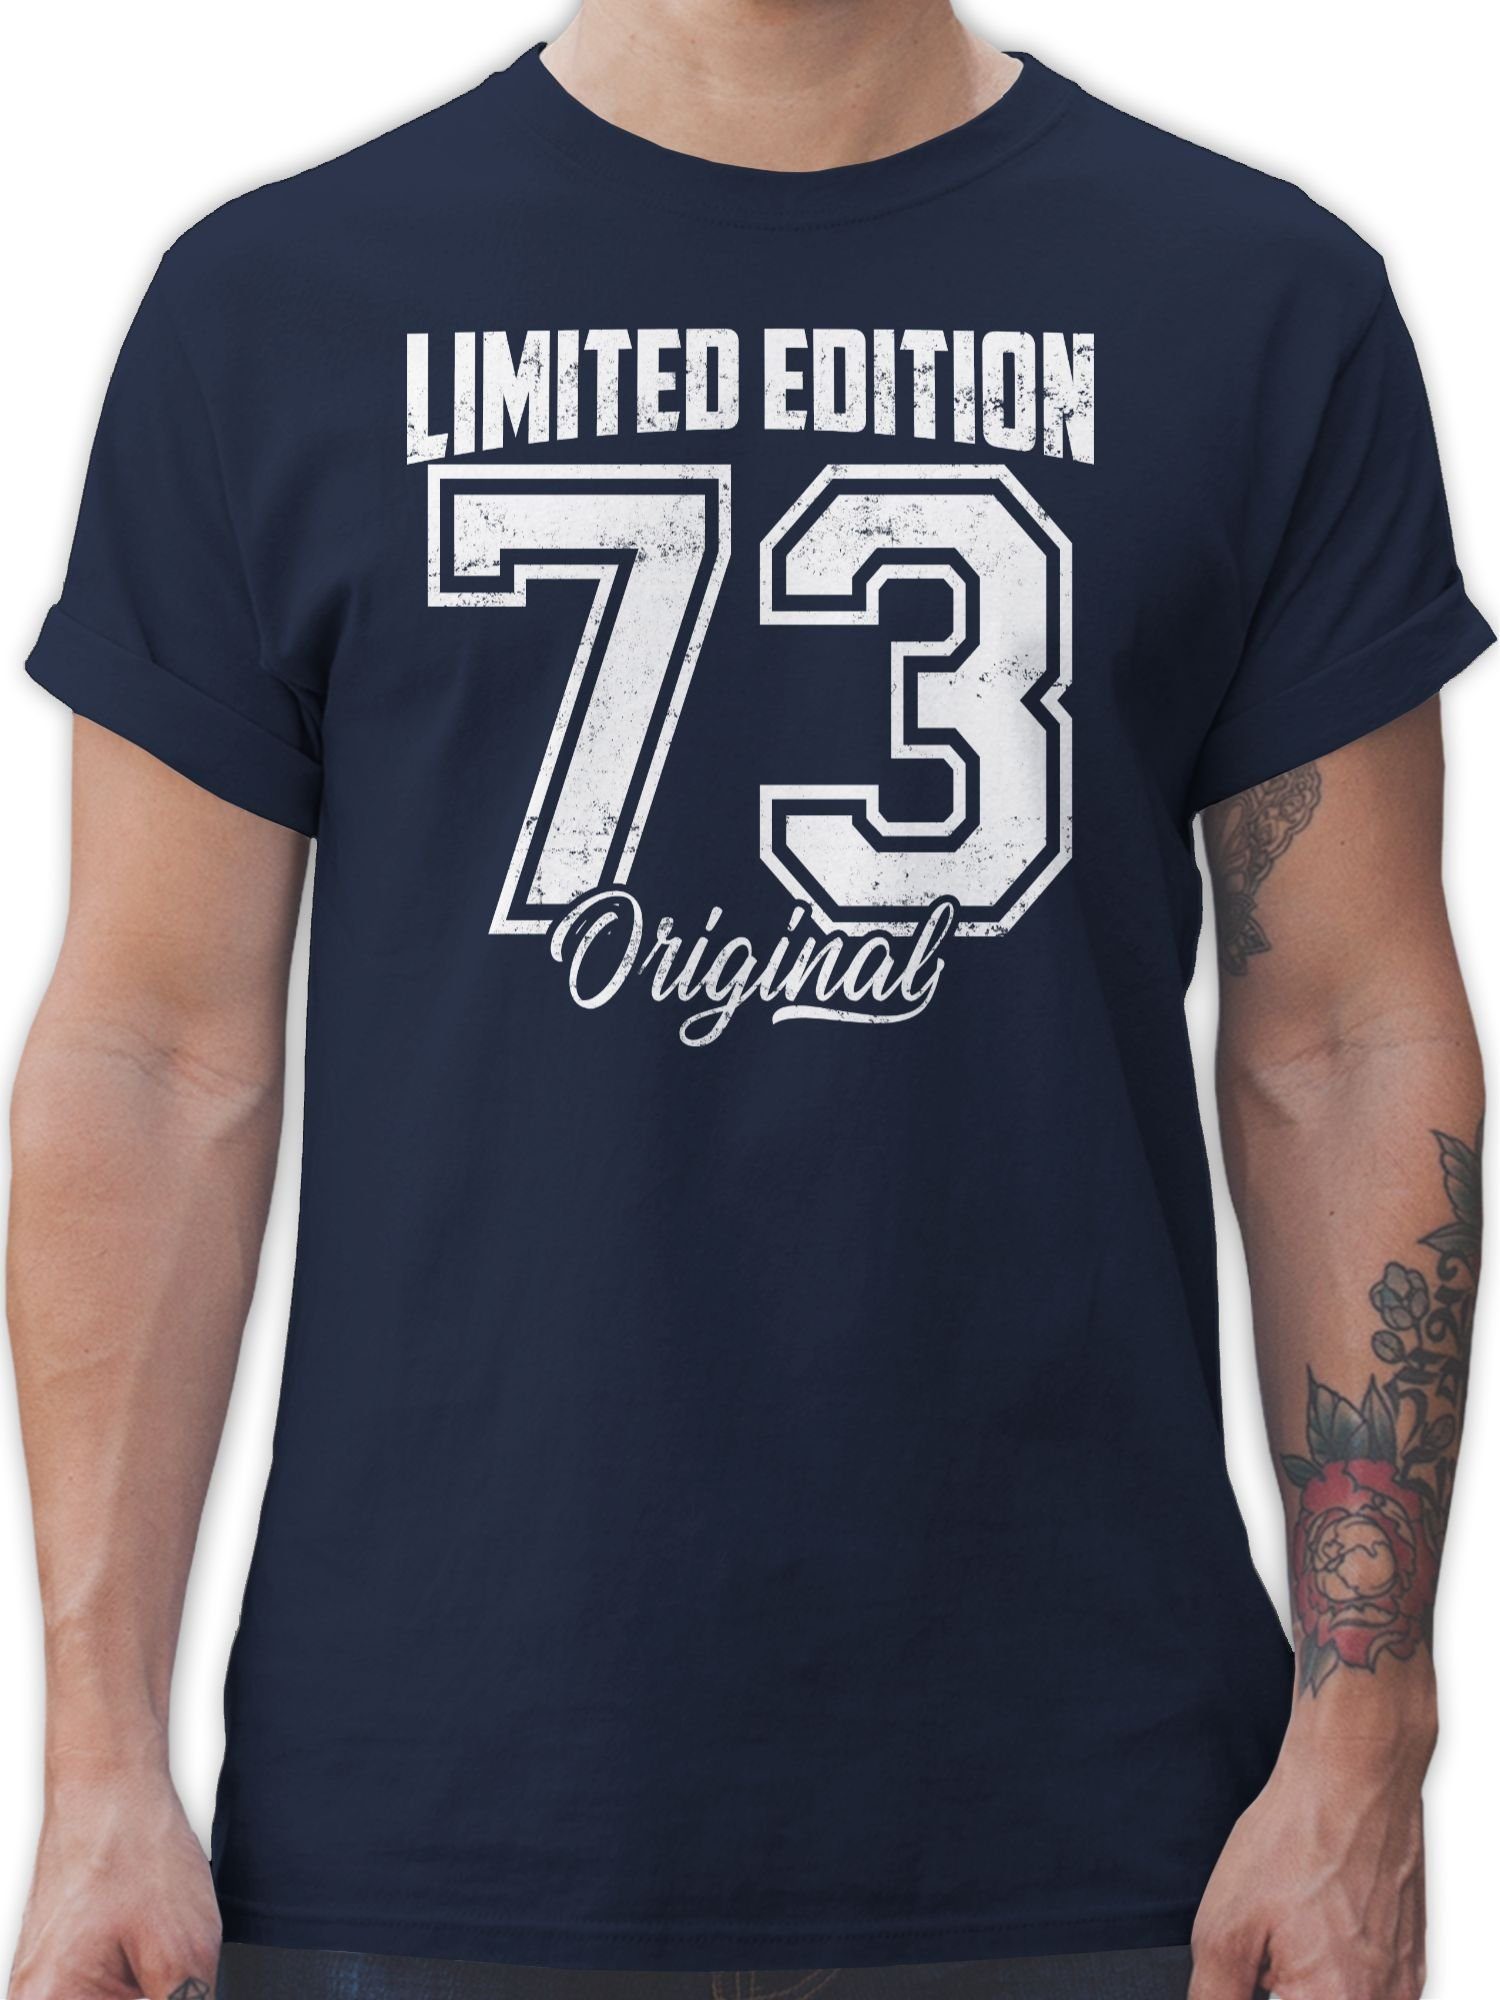 Shirtracer T-Shirt Limited Edition 1973 Fünfzigster Weiß Vintage Blau Original Navy Geburtstag 50. 03